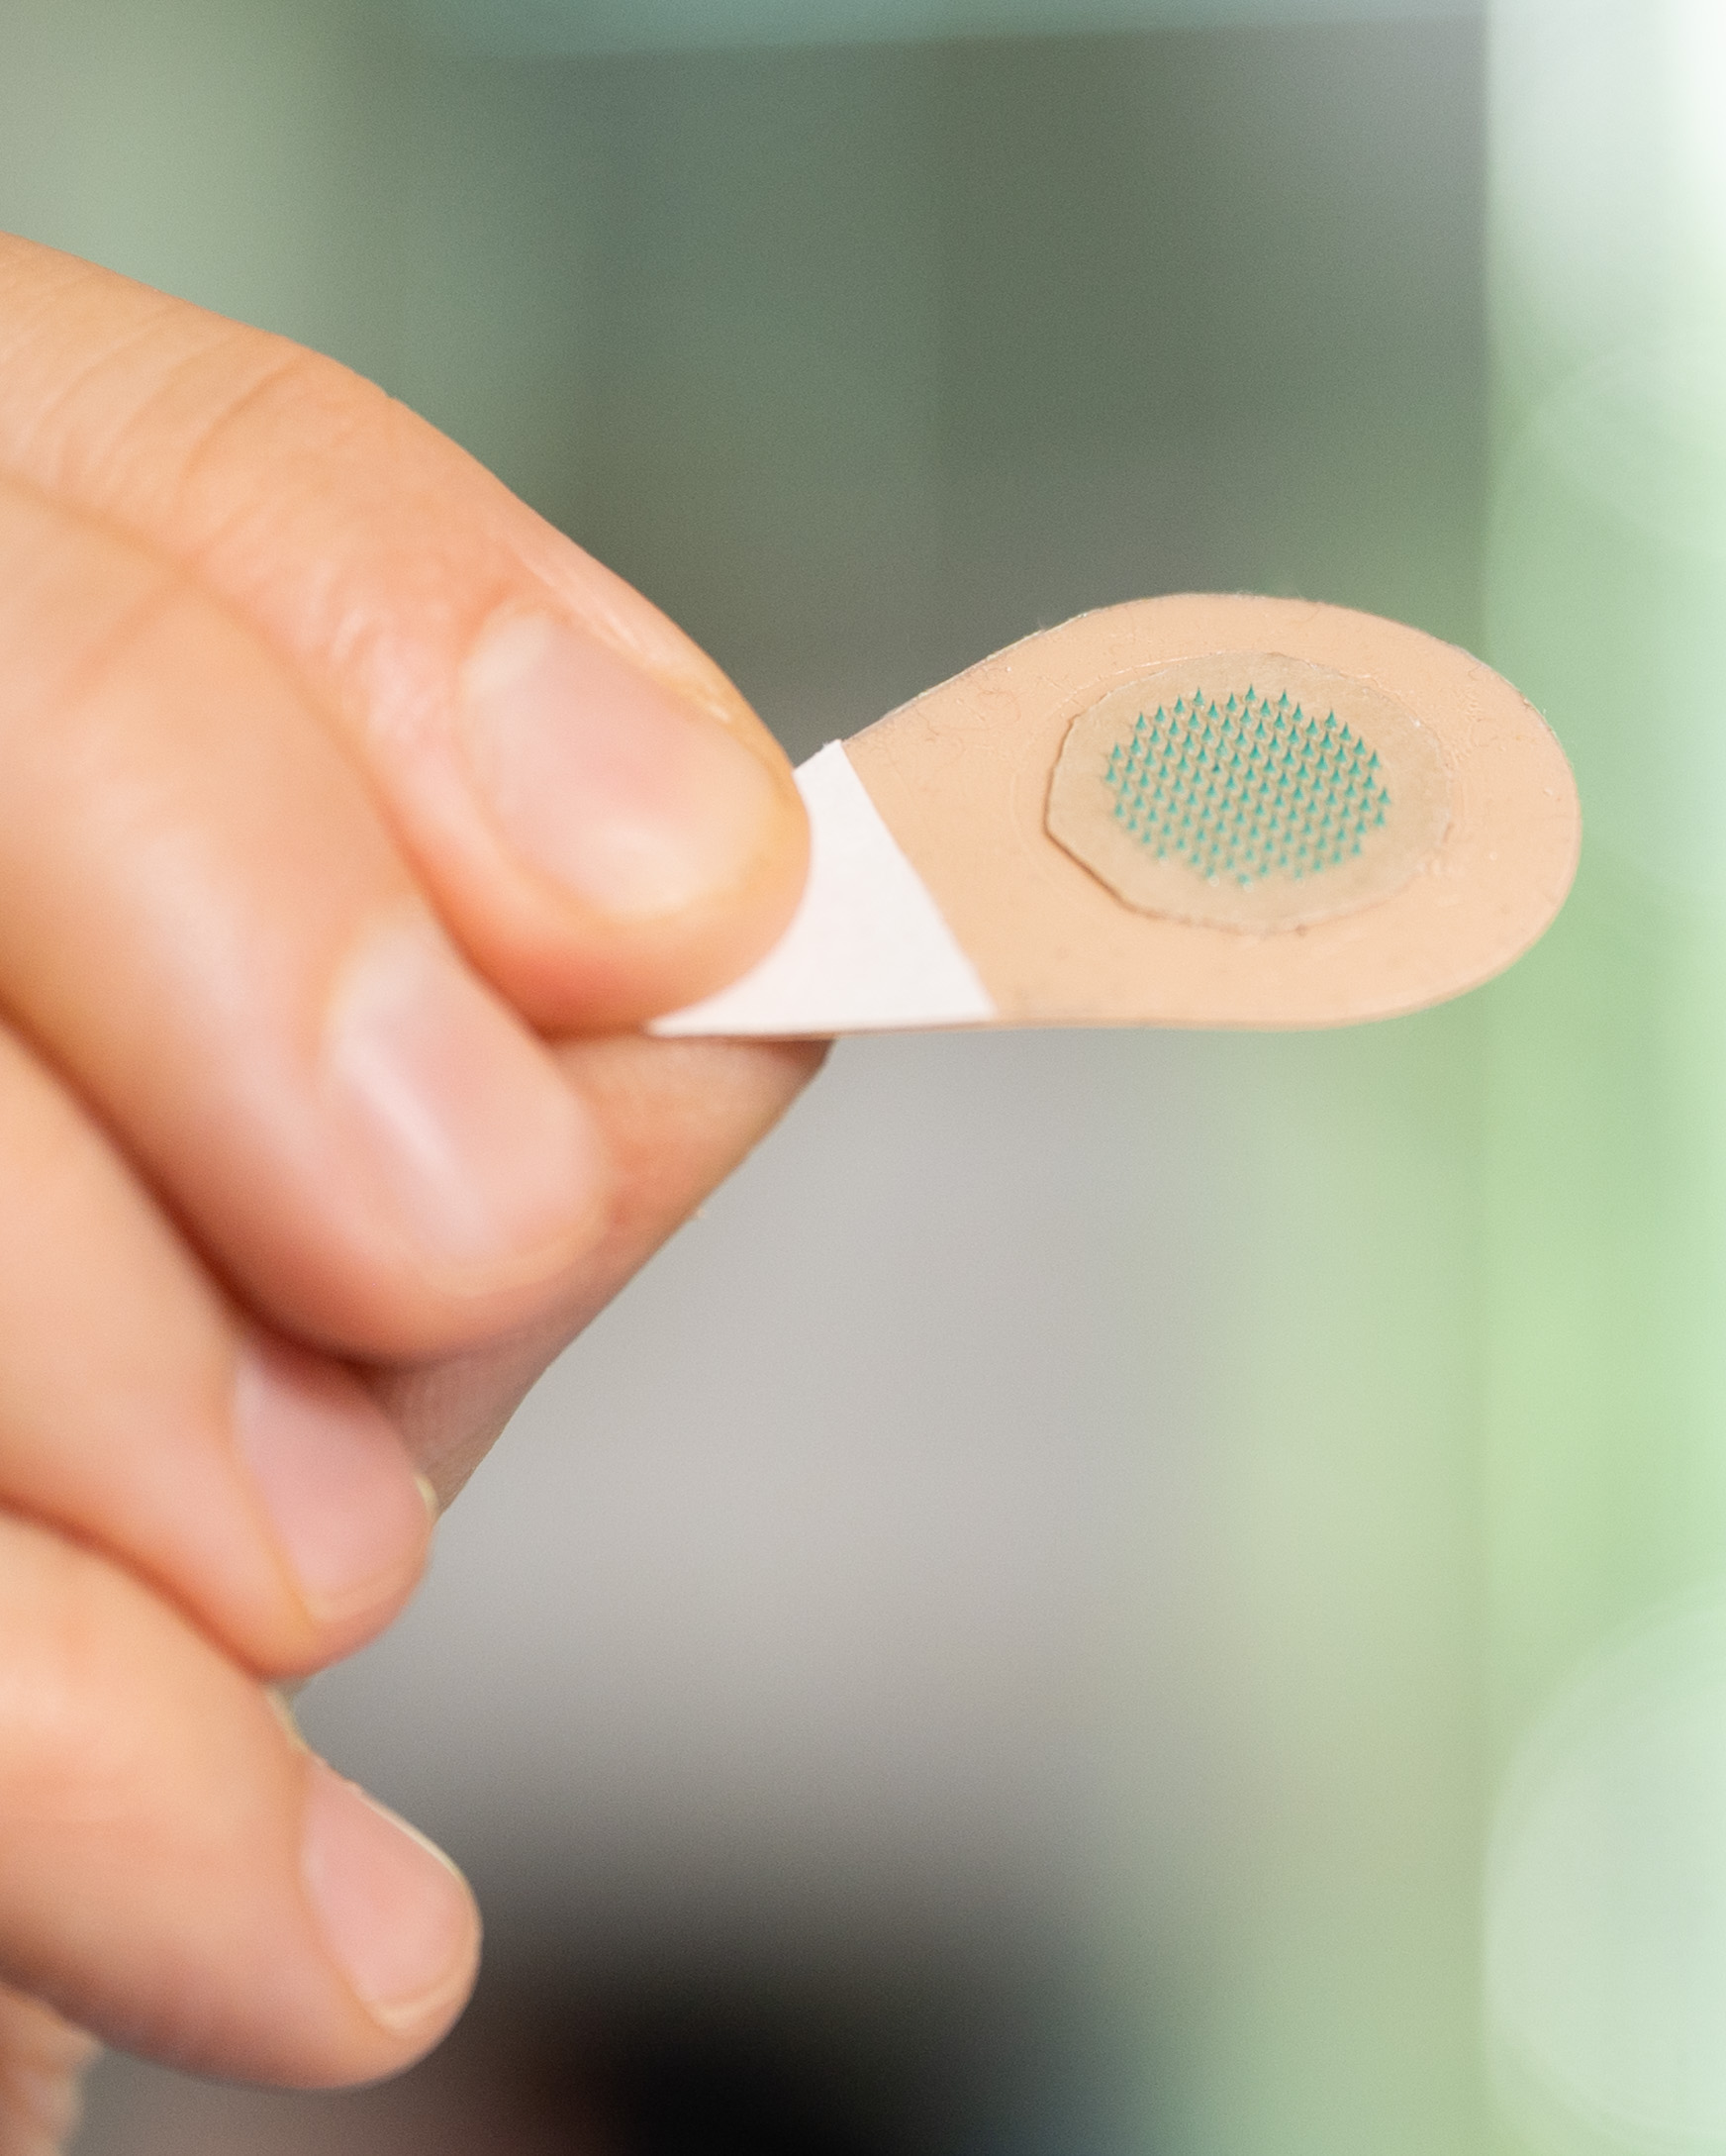 FDA Clears Nanowear's SimpleSense Non-Invasive Continuous Blood